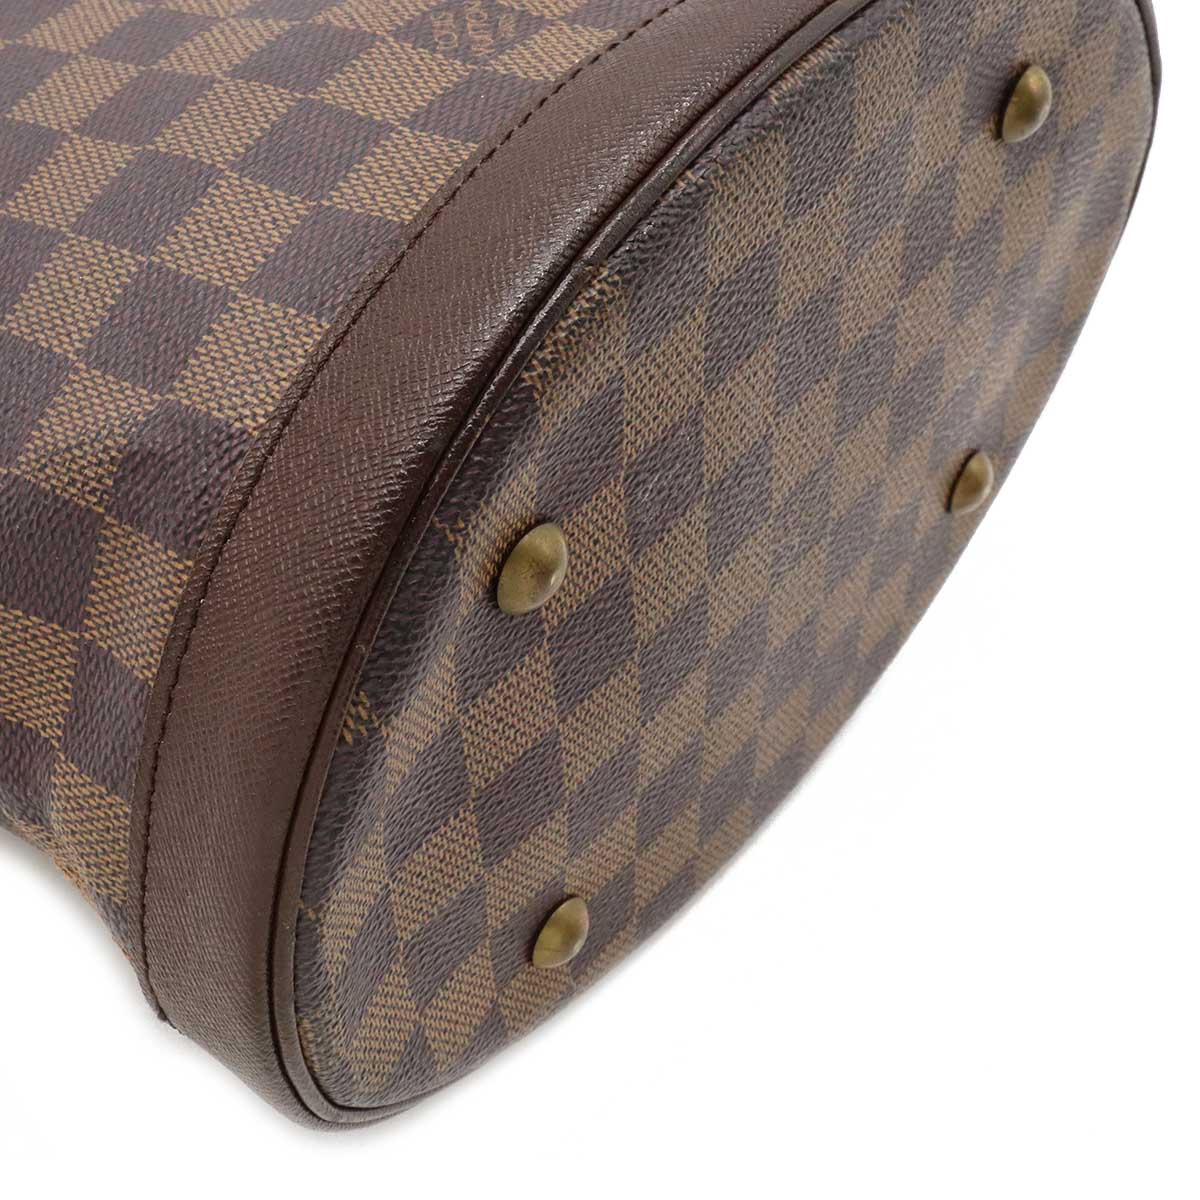 Authentic Louis Vuitton Damier Marais Bucket Shoulder Tote Bag